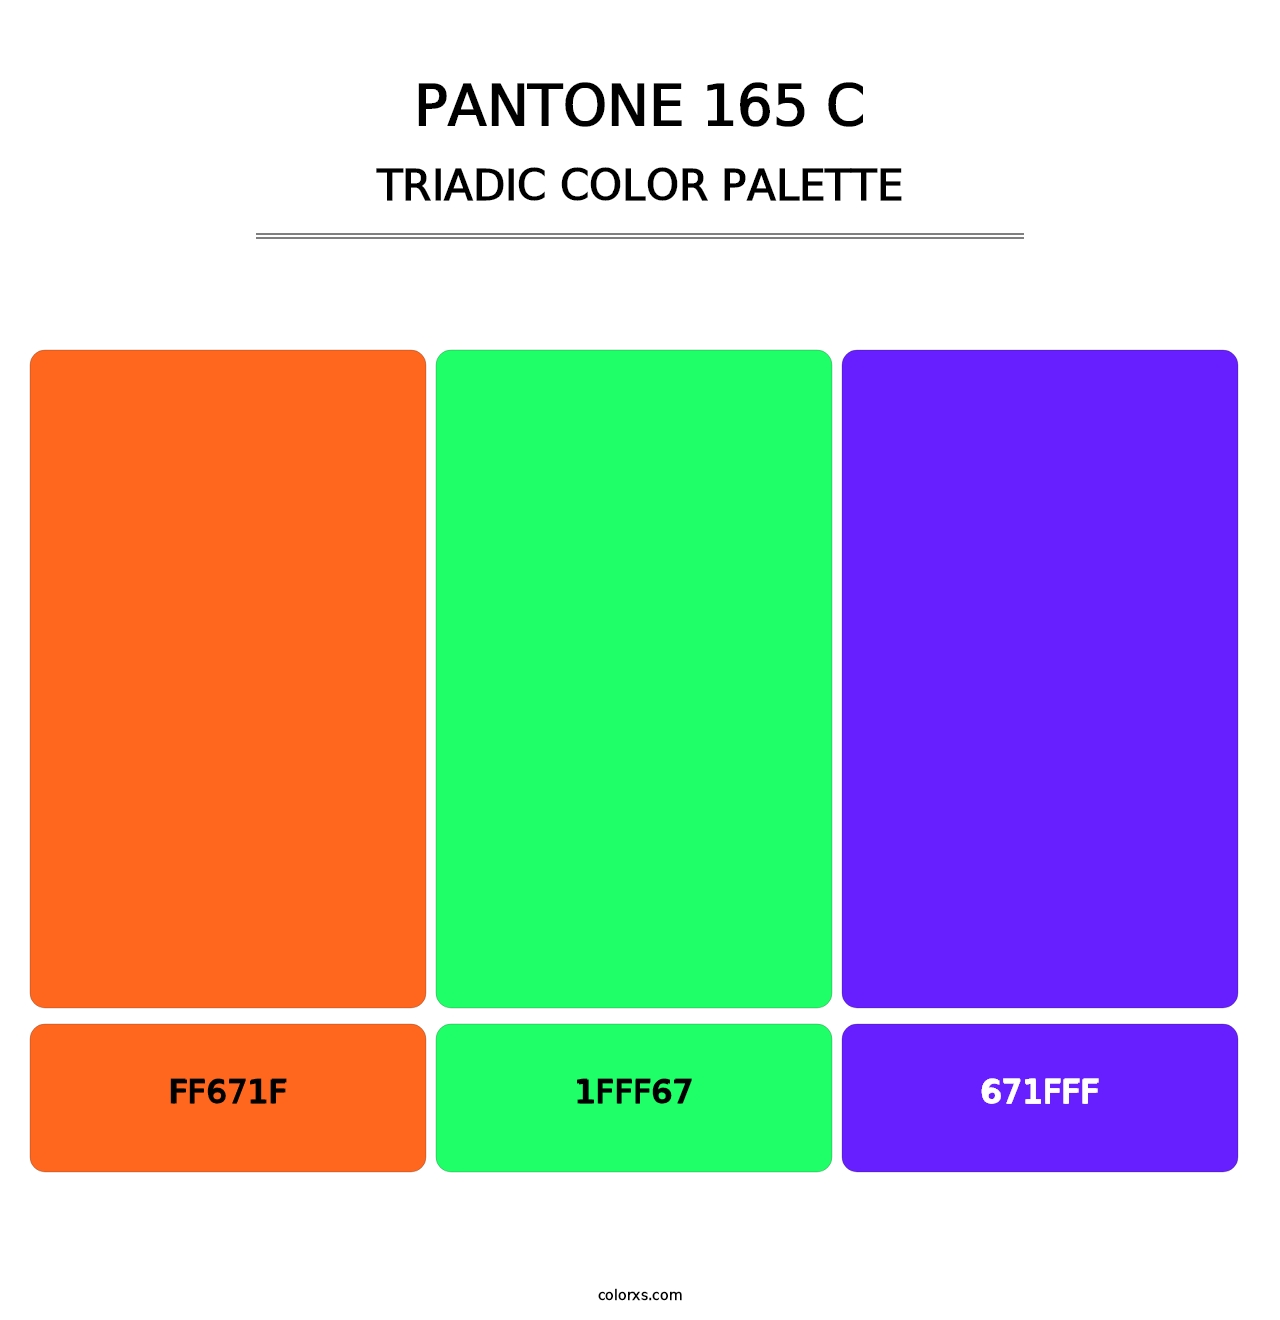 PANTONE 165 C - Triadic Color Palette